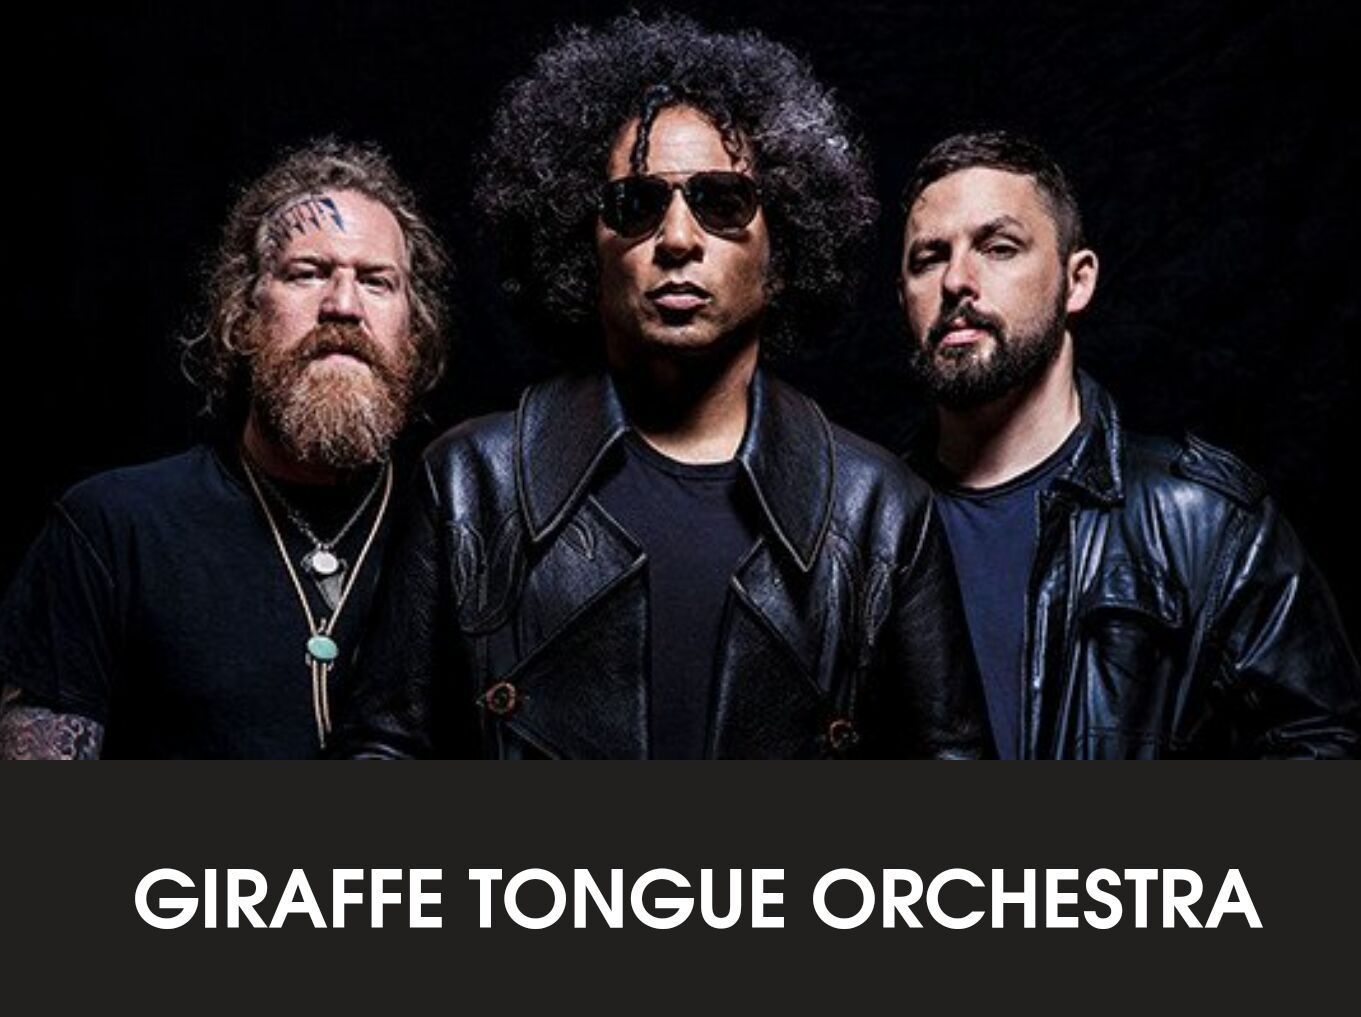 Giraffe Tongue Orchestra: 'Crucifixion'-Video veröffentlicht